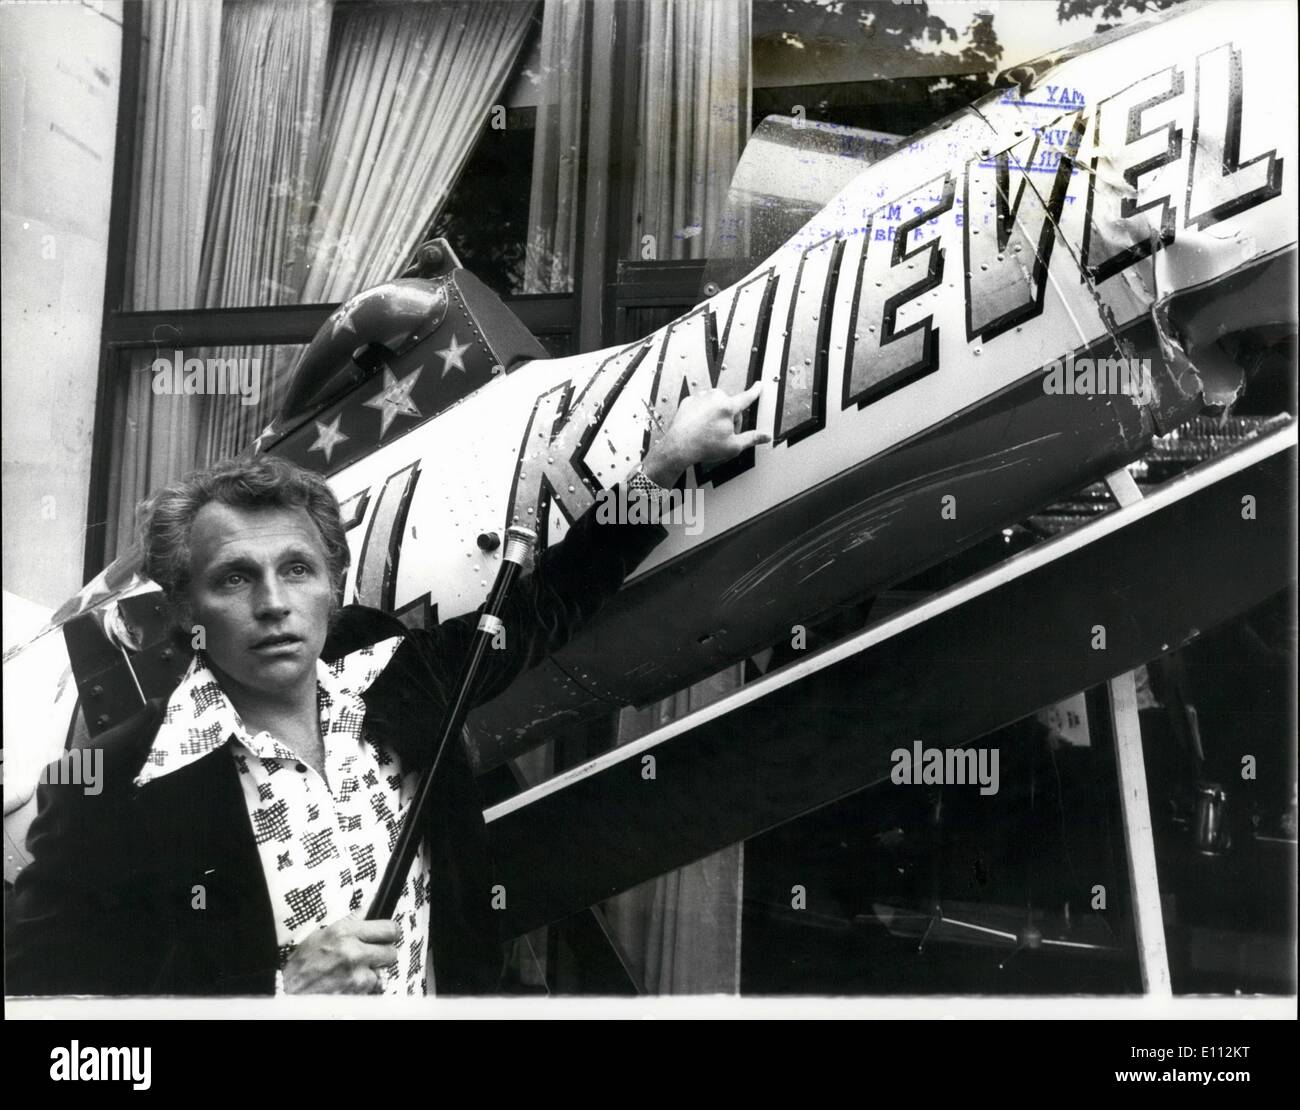 Mai 05, 1975 Evel Knievel - les plus hautes du monde payé Daredevil arrive en Grande-Bretagne : Evel Knievel, les 35 ans de millionnaire les contreforts du Montana, et reconnues comme les plus hautes du monde payé daredevil, est arrivé à Londres pour commencer une visite de la Grande-Bretagne. L'homme surnommé ''King de la vie riskers'' par des millions de spectateurs qui ont regardé son audace rocket-saut assisté à New York's giant Snake River Canyon, est devenue une légende dans toute l'Amérique pour de spectaculaires sauts du cycle moteur. Le premier niveau show spectaculaire mauvais lieu au stade de Wembley le lundi de Pentecôte, 26 mai Banque D'Images